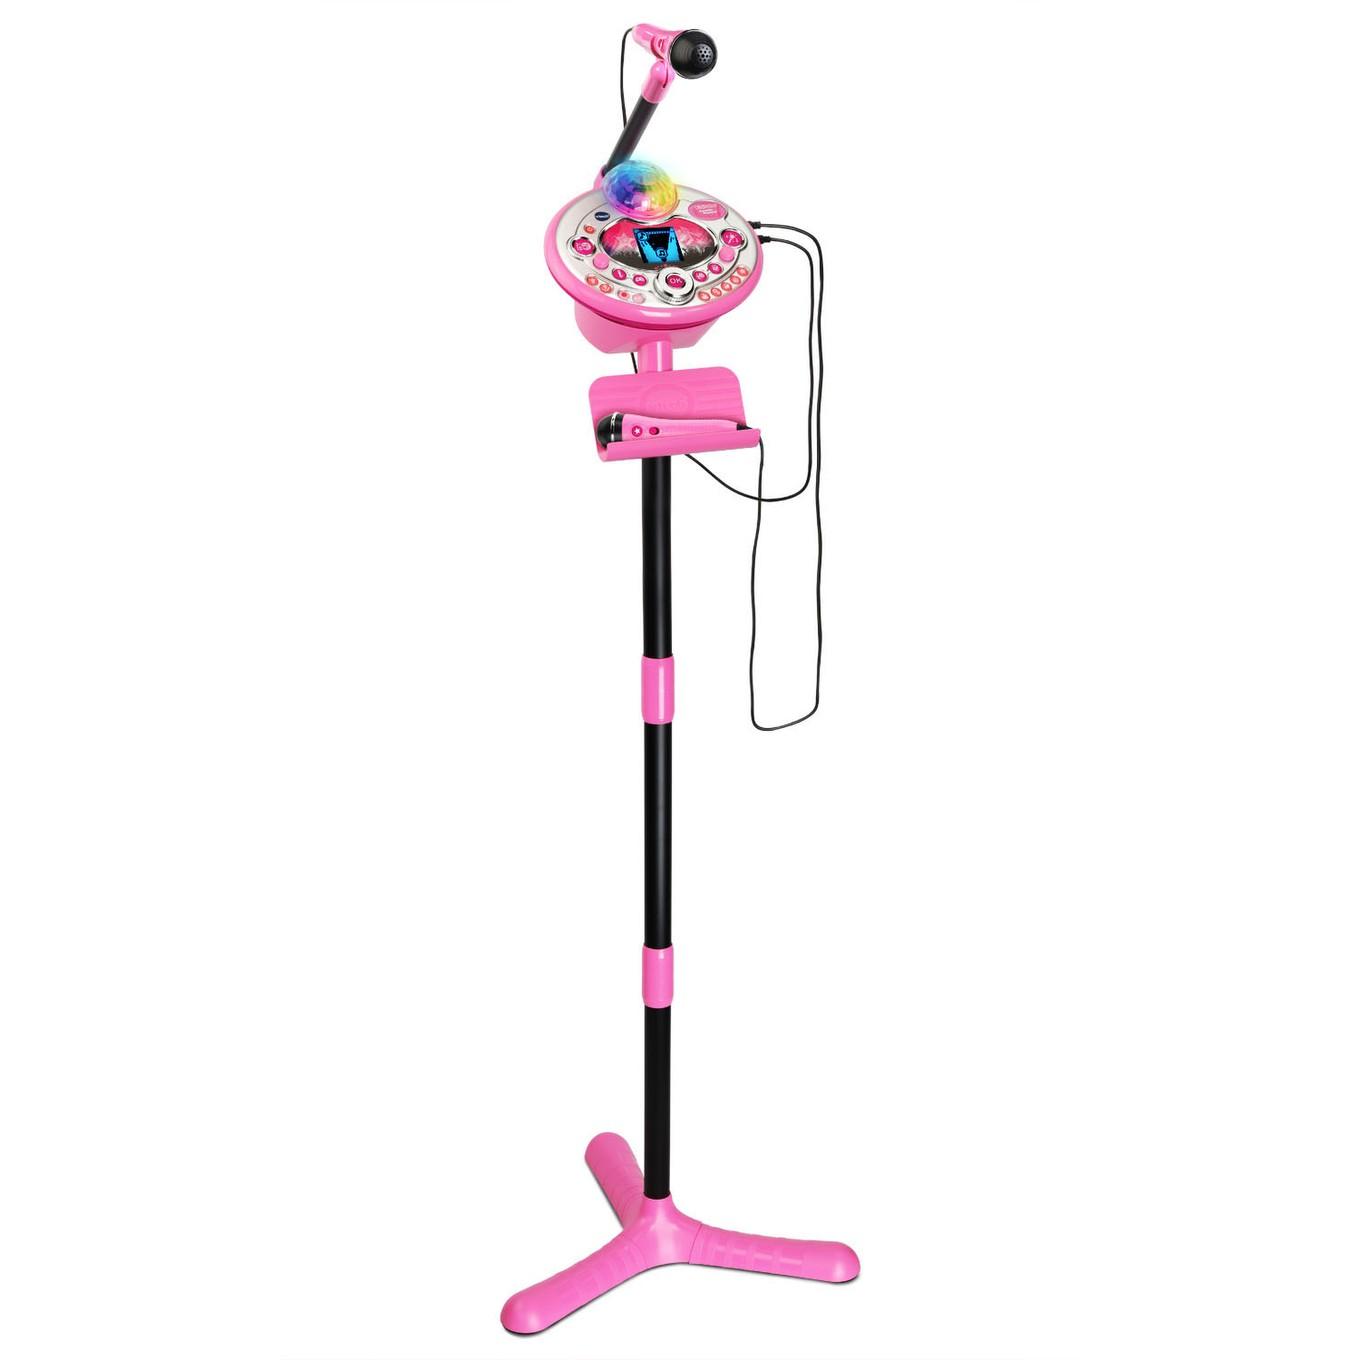 Kidi Star Karaoke Machine™ Deluxe, Pink - Preschool Toy │ VTech®